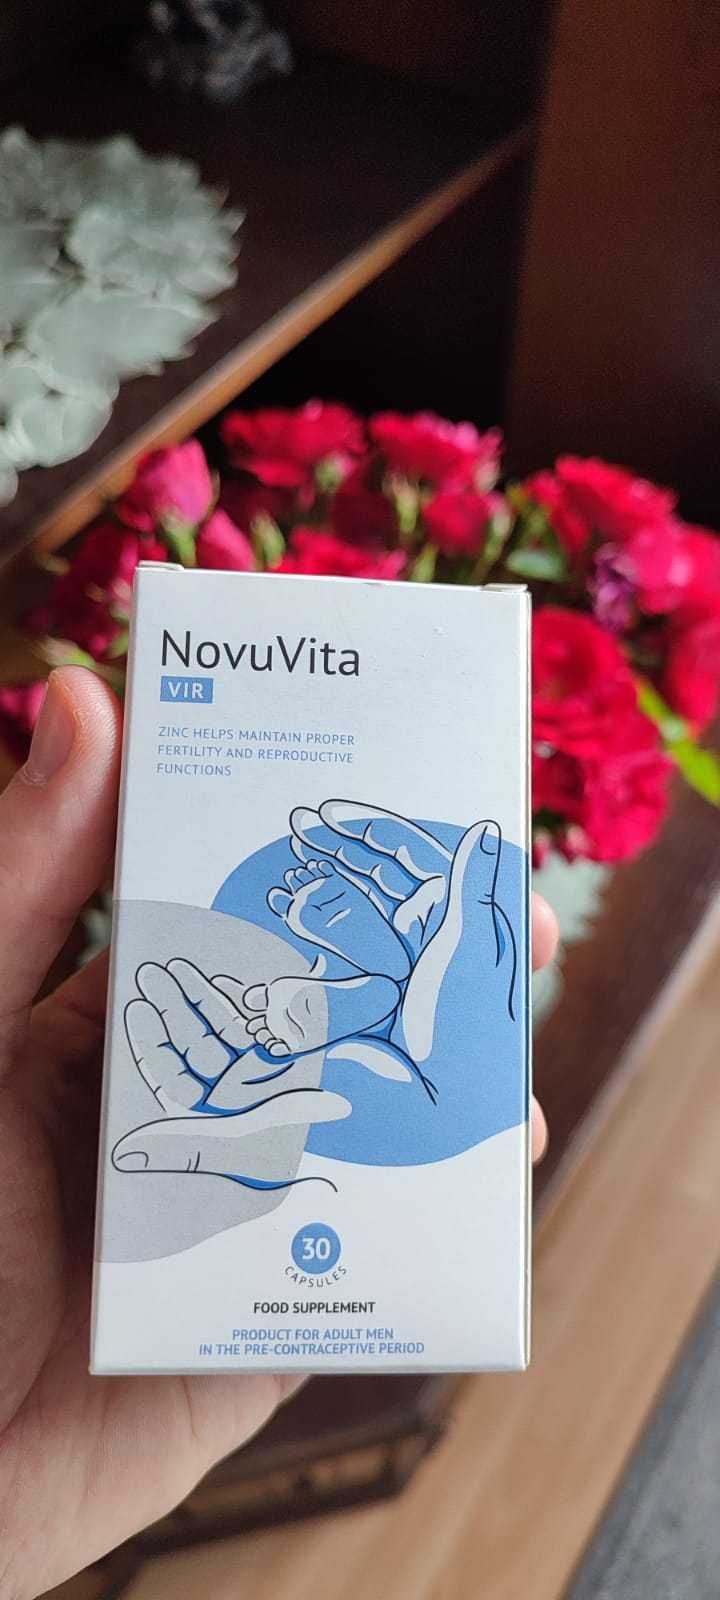 Witaminy NOVUVITA VIR Skuteczny na poprawę płodności u mężczyzn.